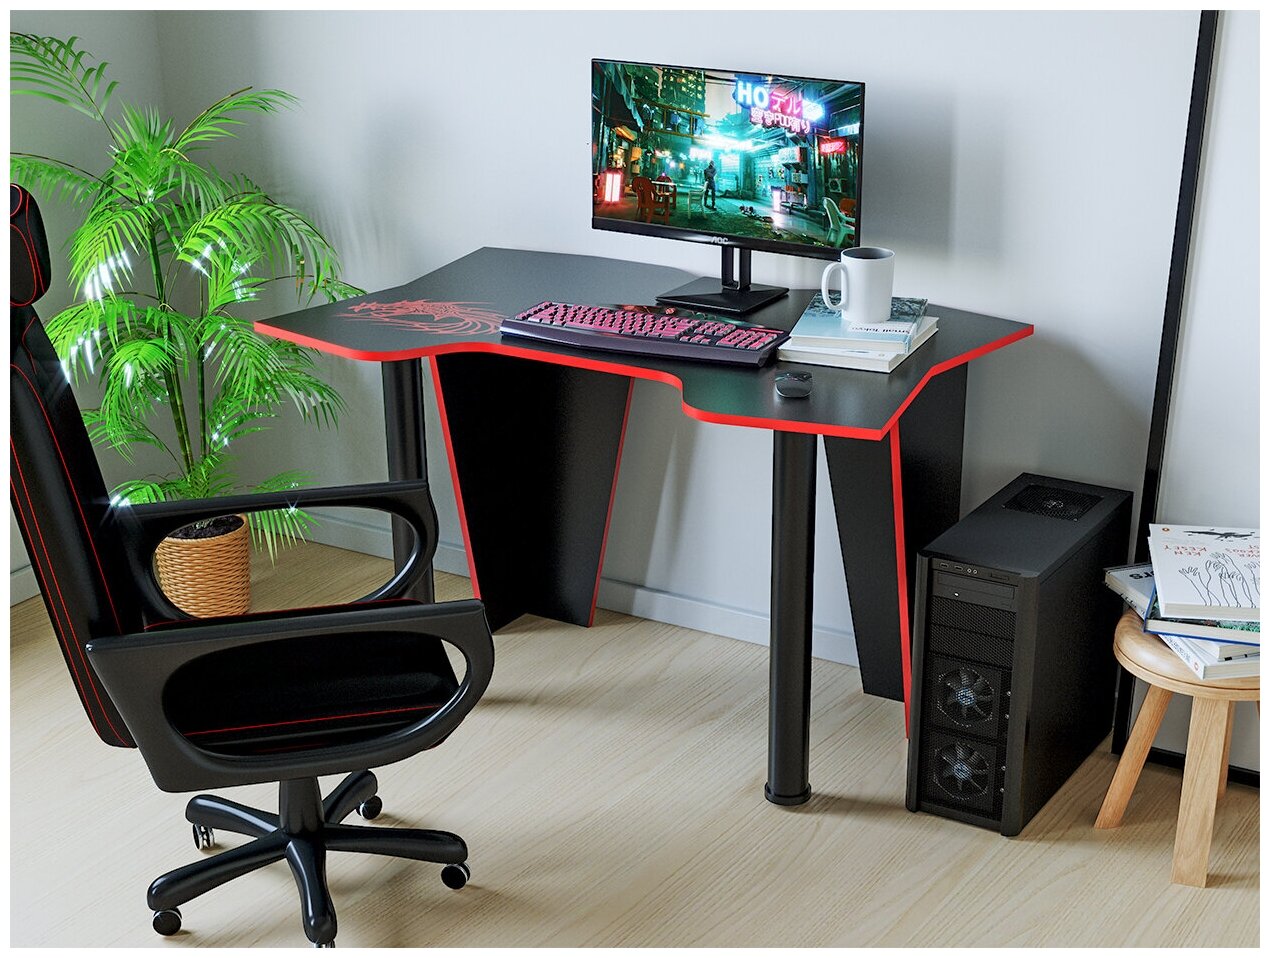 Компьютерный стол КЛ №9.1 черный/красный